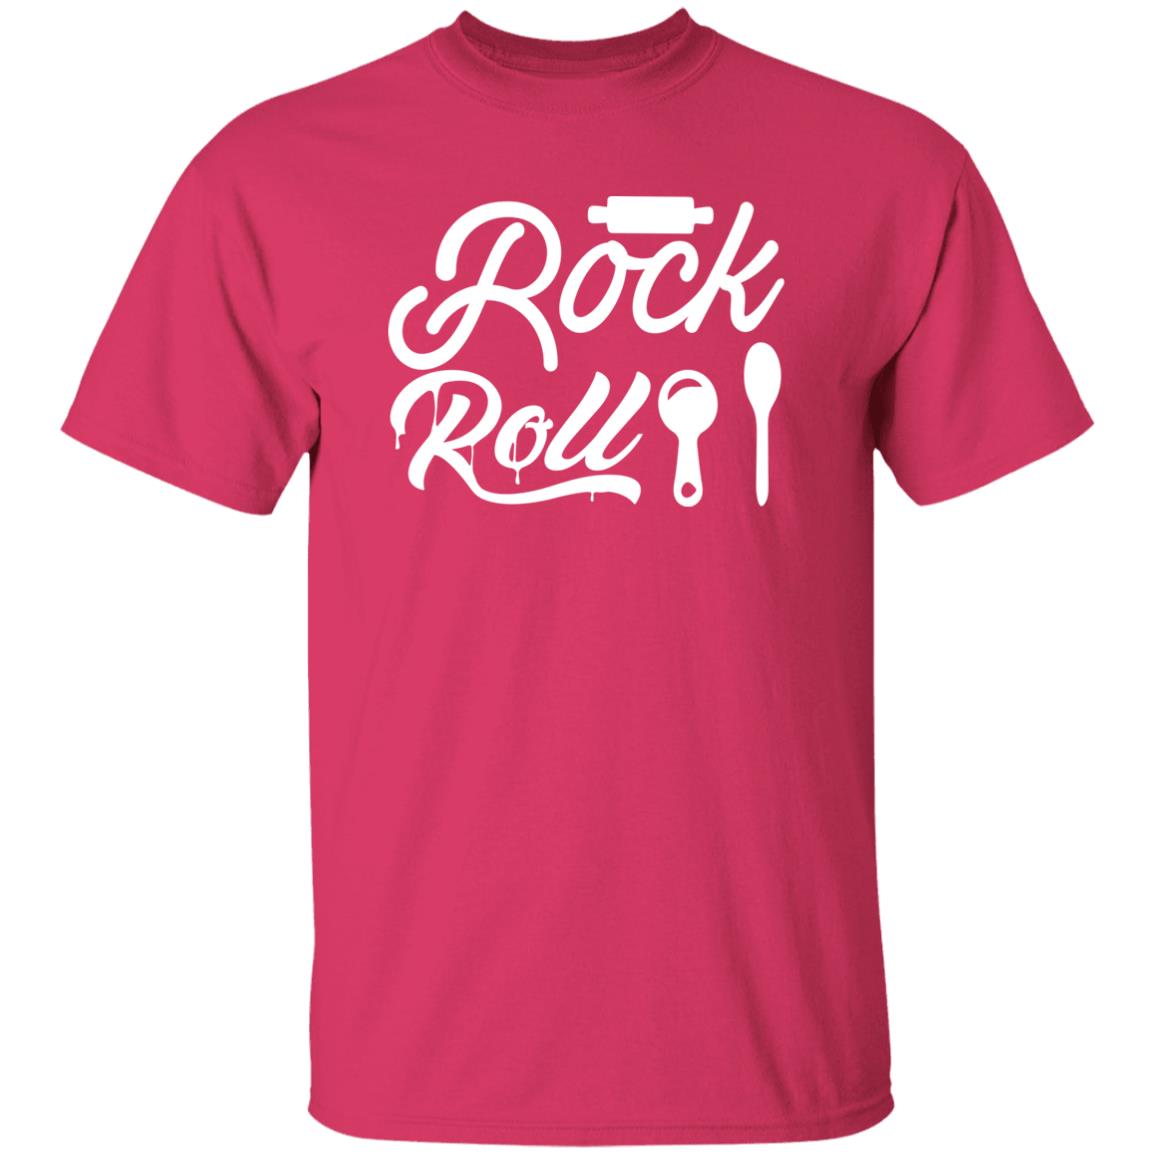 Rock 'n Roll | Short Sleeve T-shirt | %100 Cotton